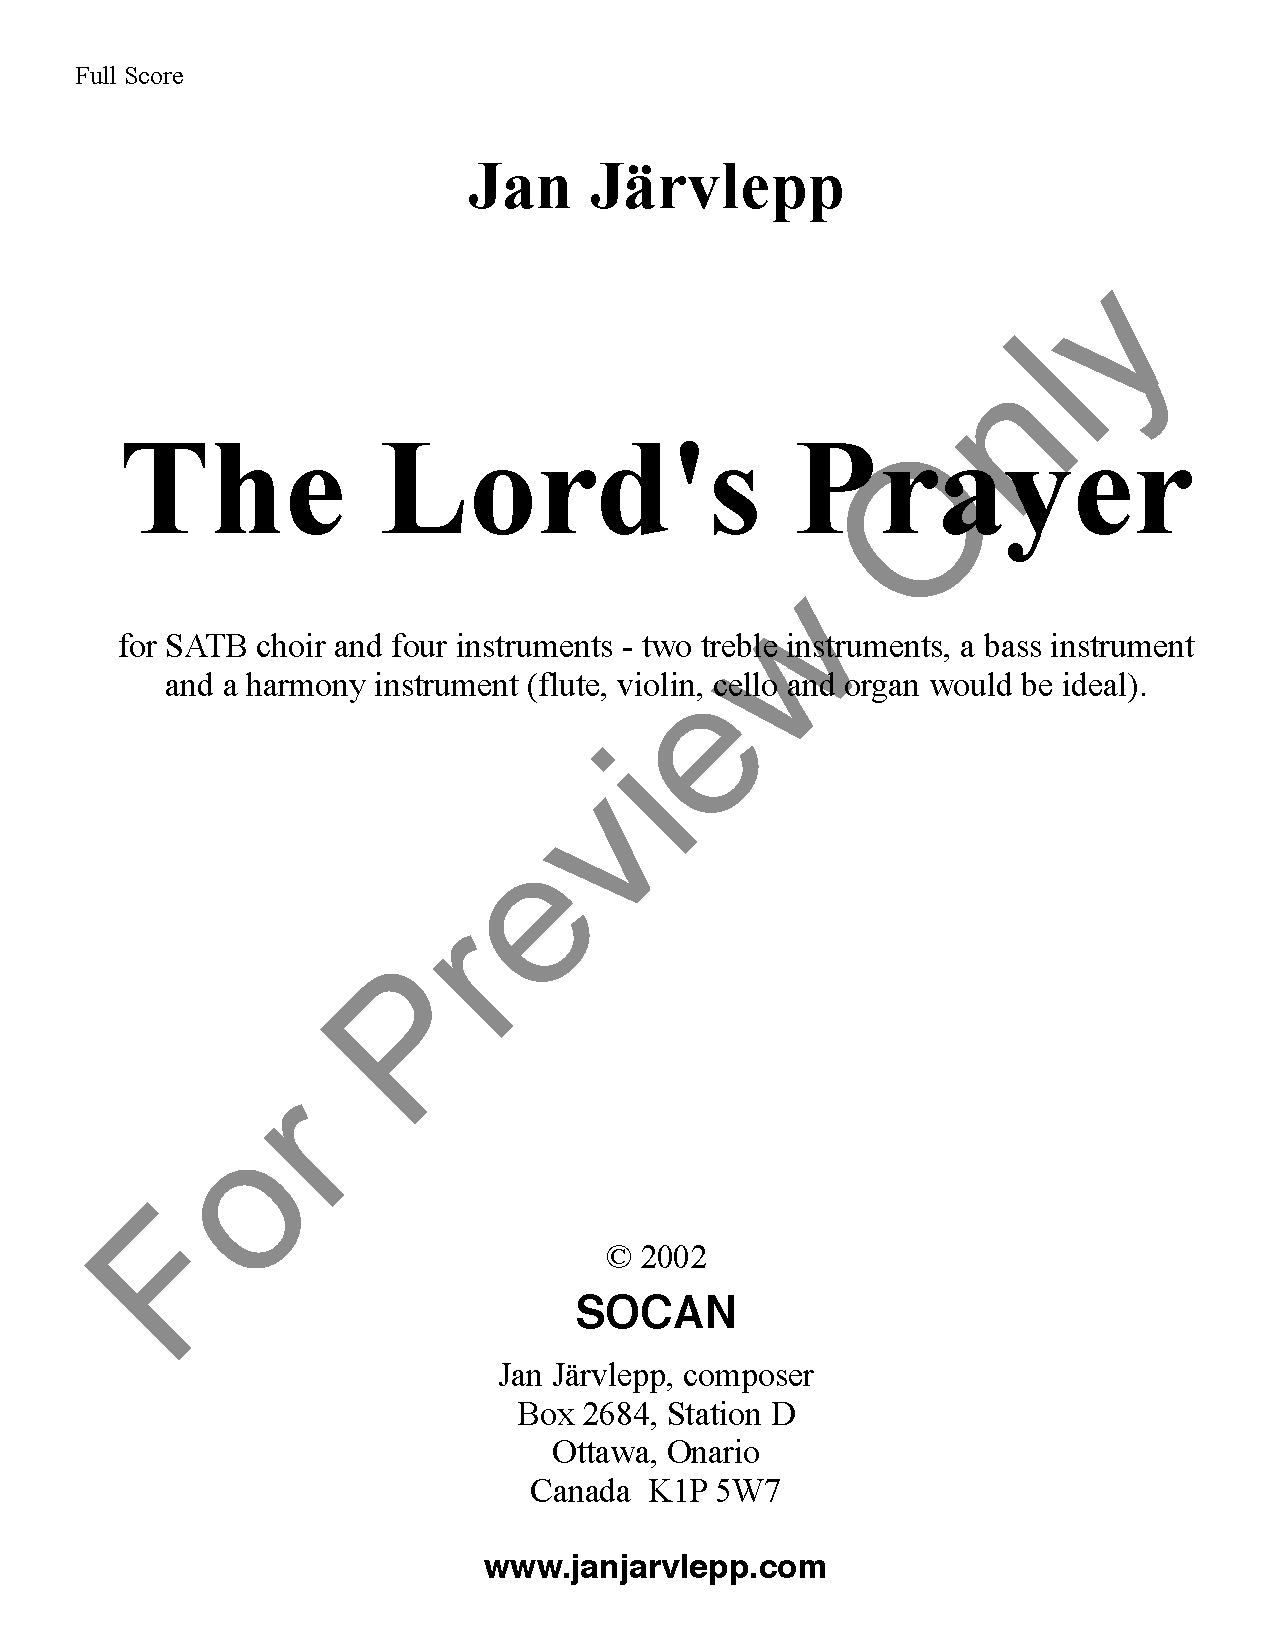 The Lord's Prayer - Full Score SCORE P.O.D.